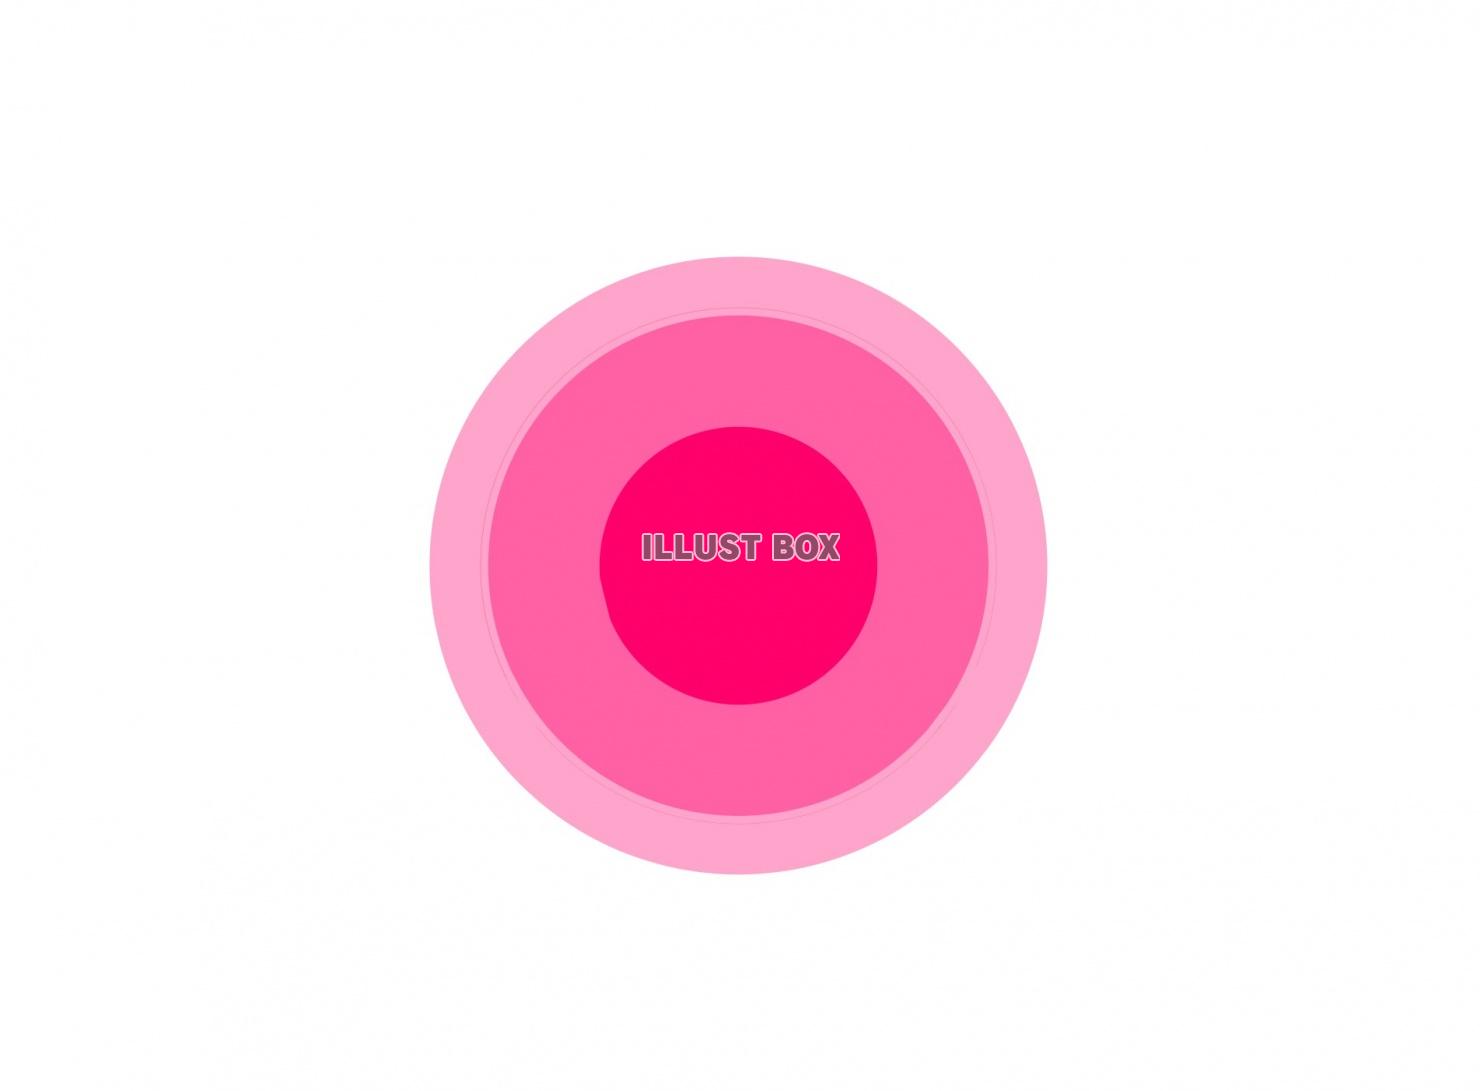 ピンクの円形レイアウト(背景)